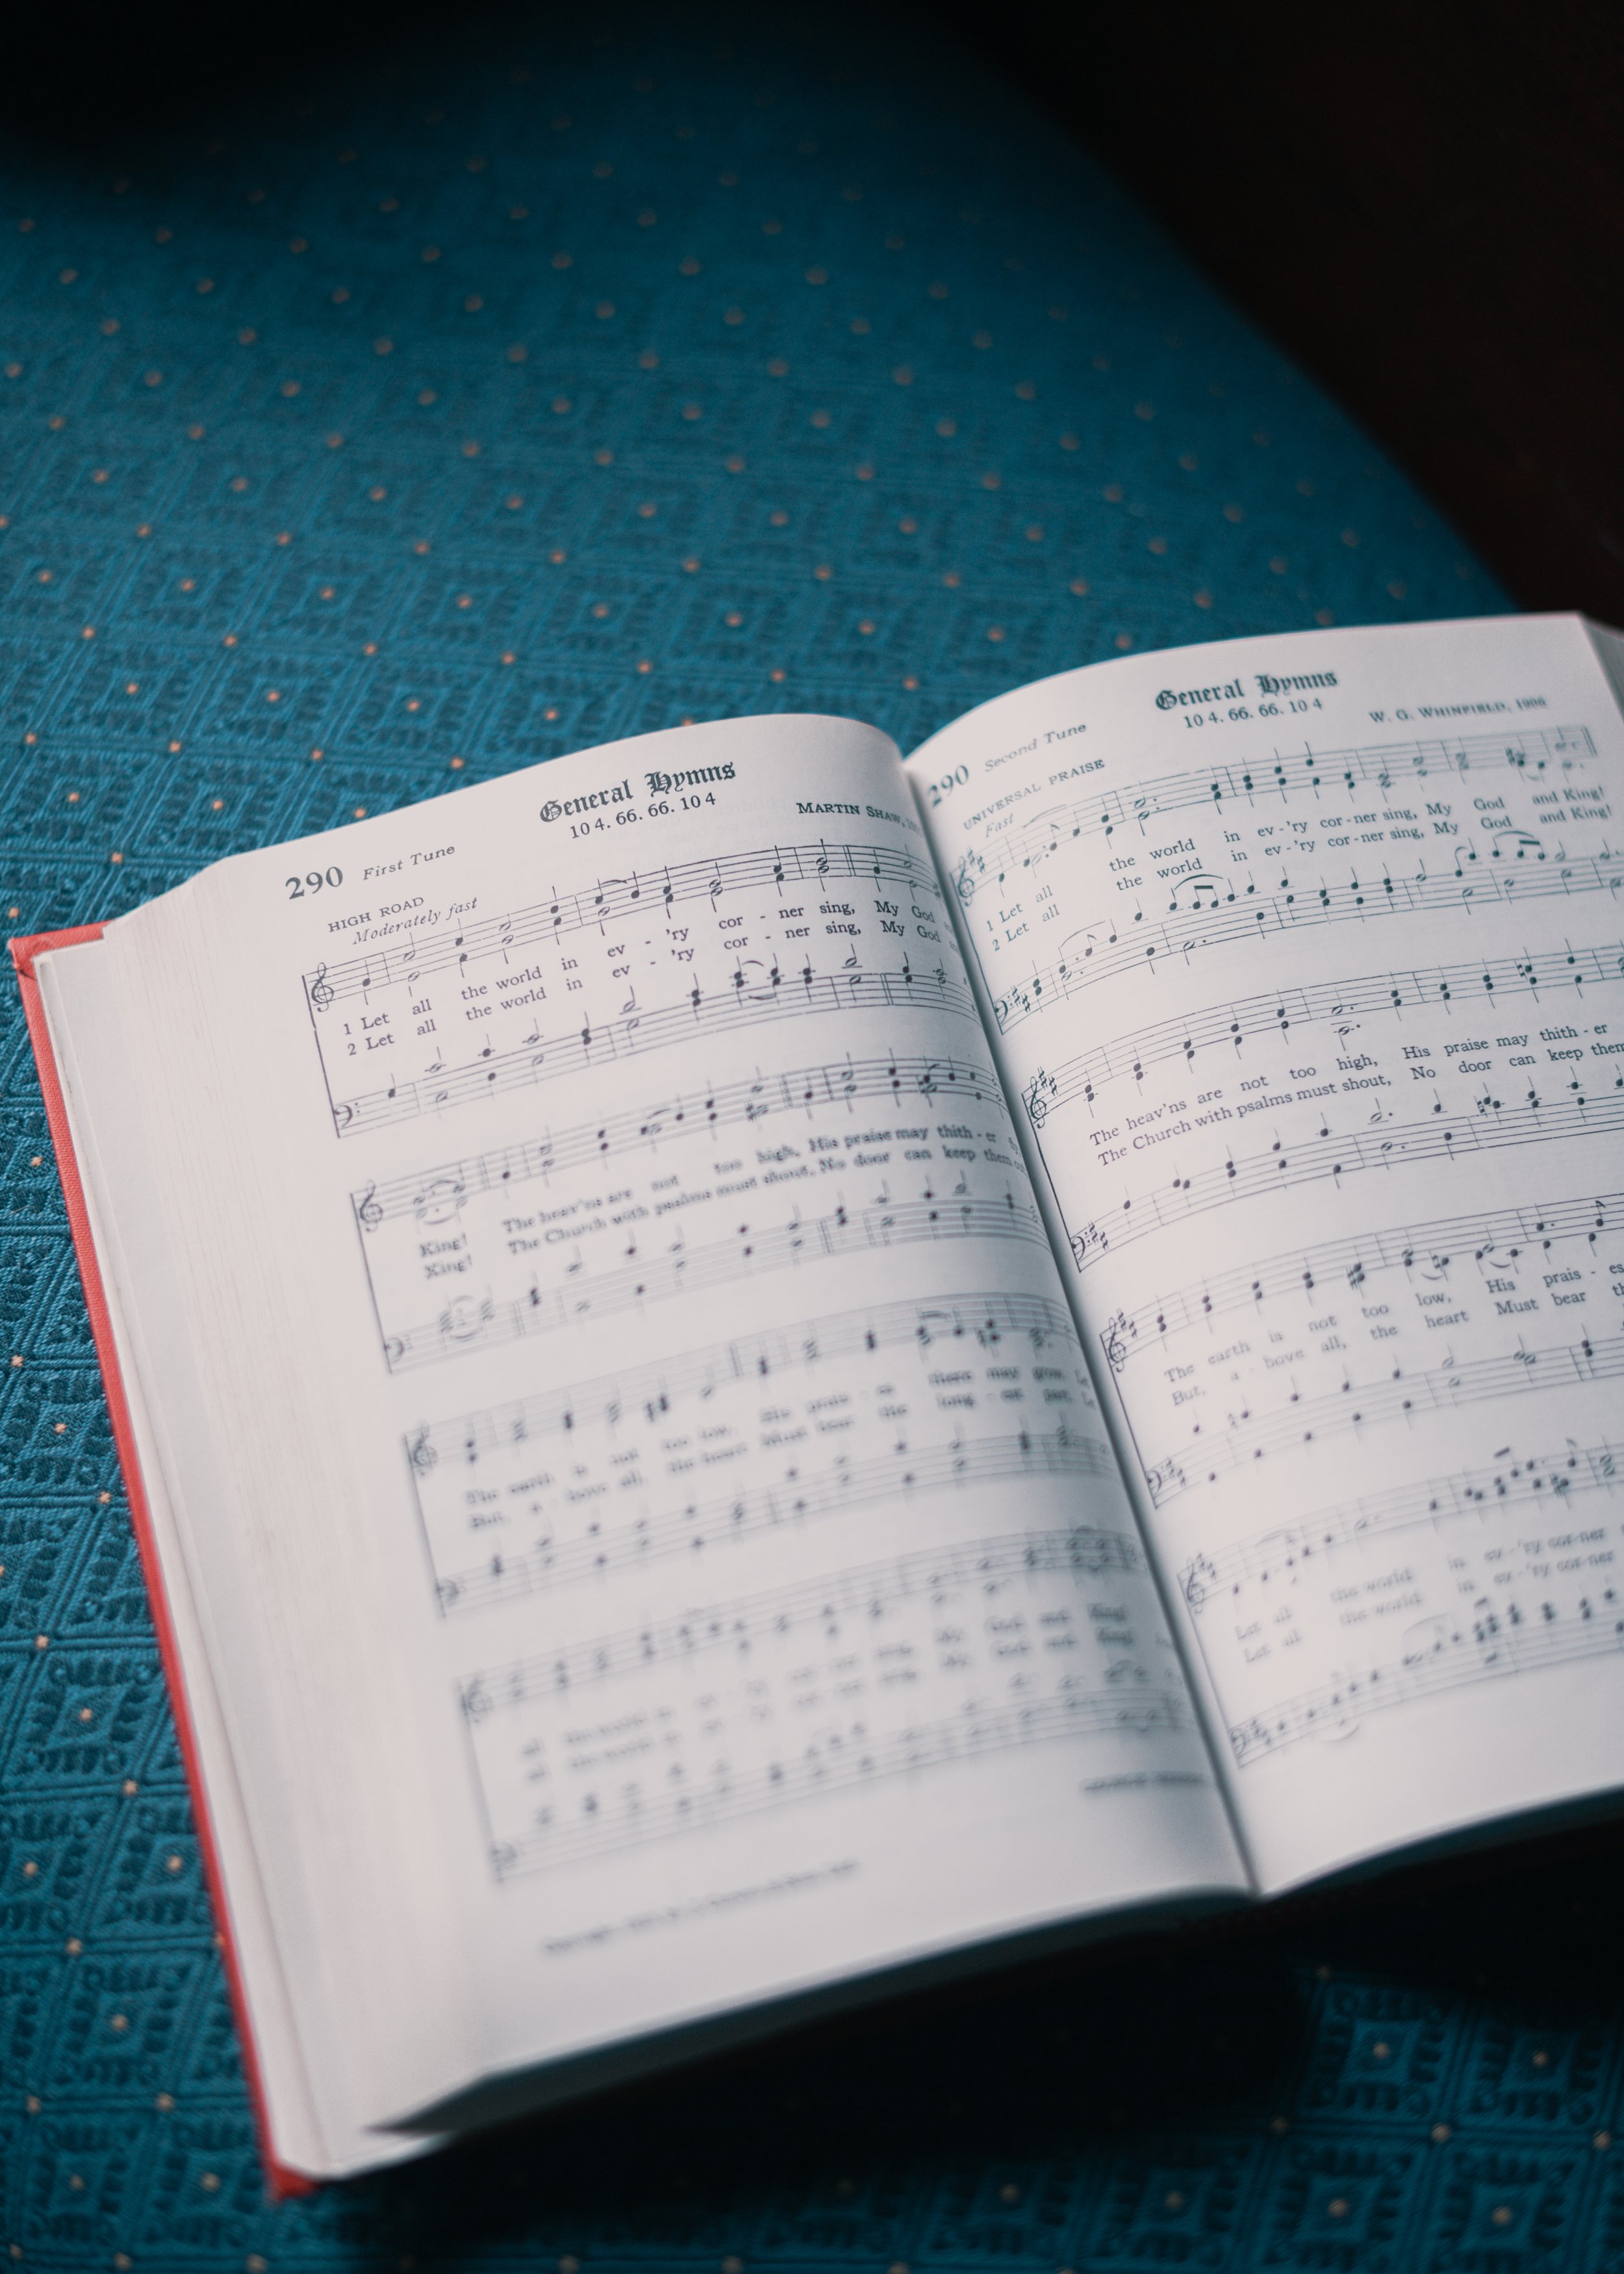 Music — All Saints Anglican Church